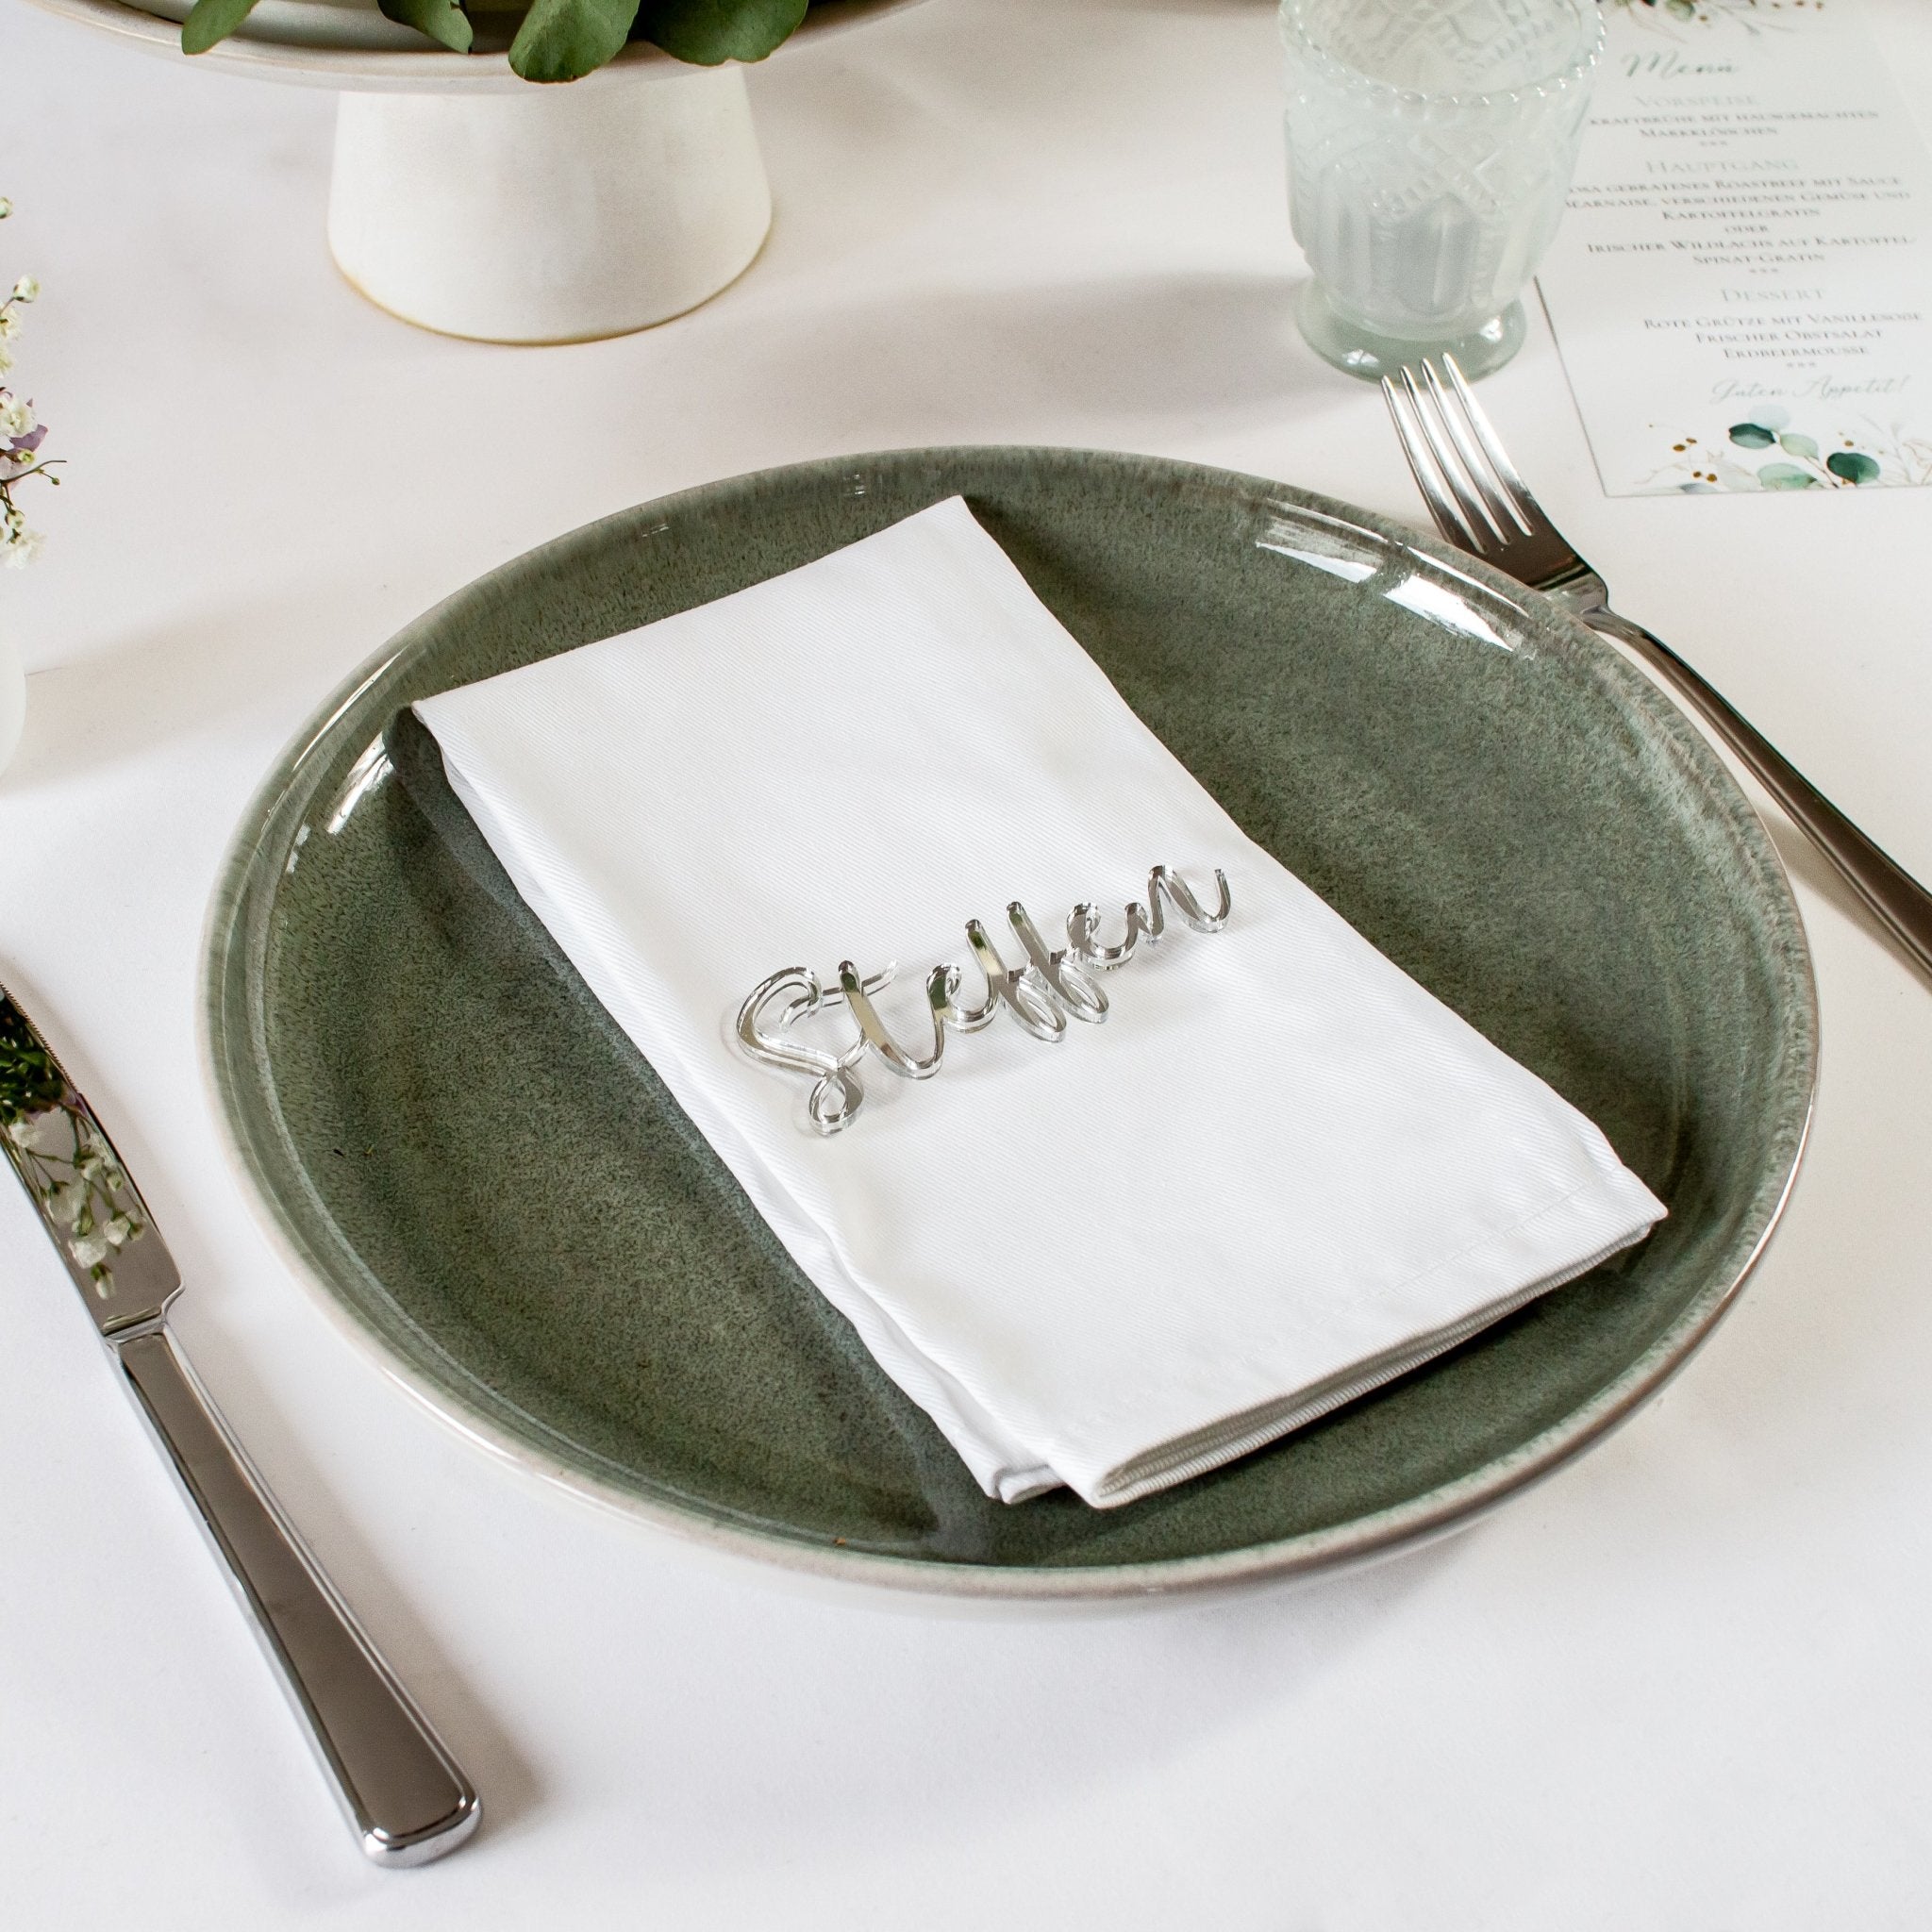 Tischkarte Silber Acryl liegend auf einen Teller mit Serviette  zur Tischdekoration Hochzeit